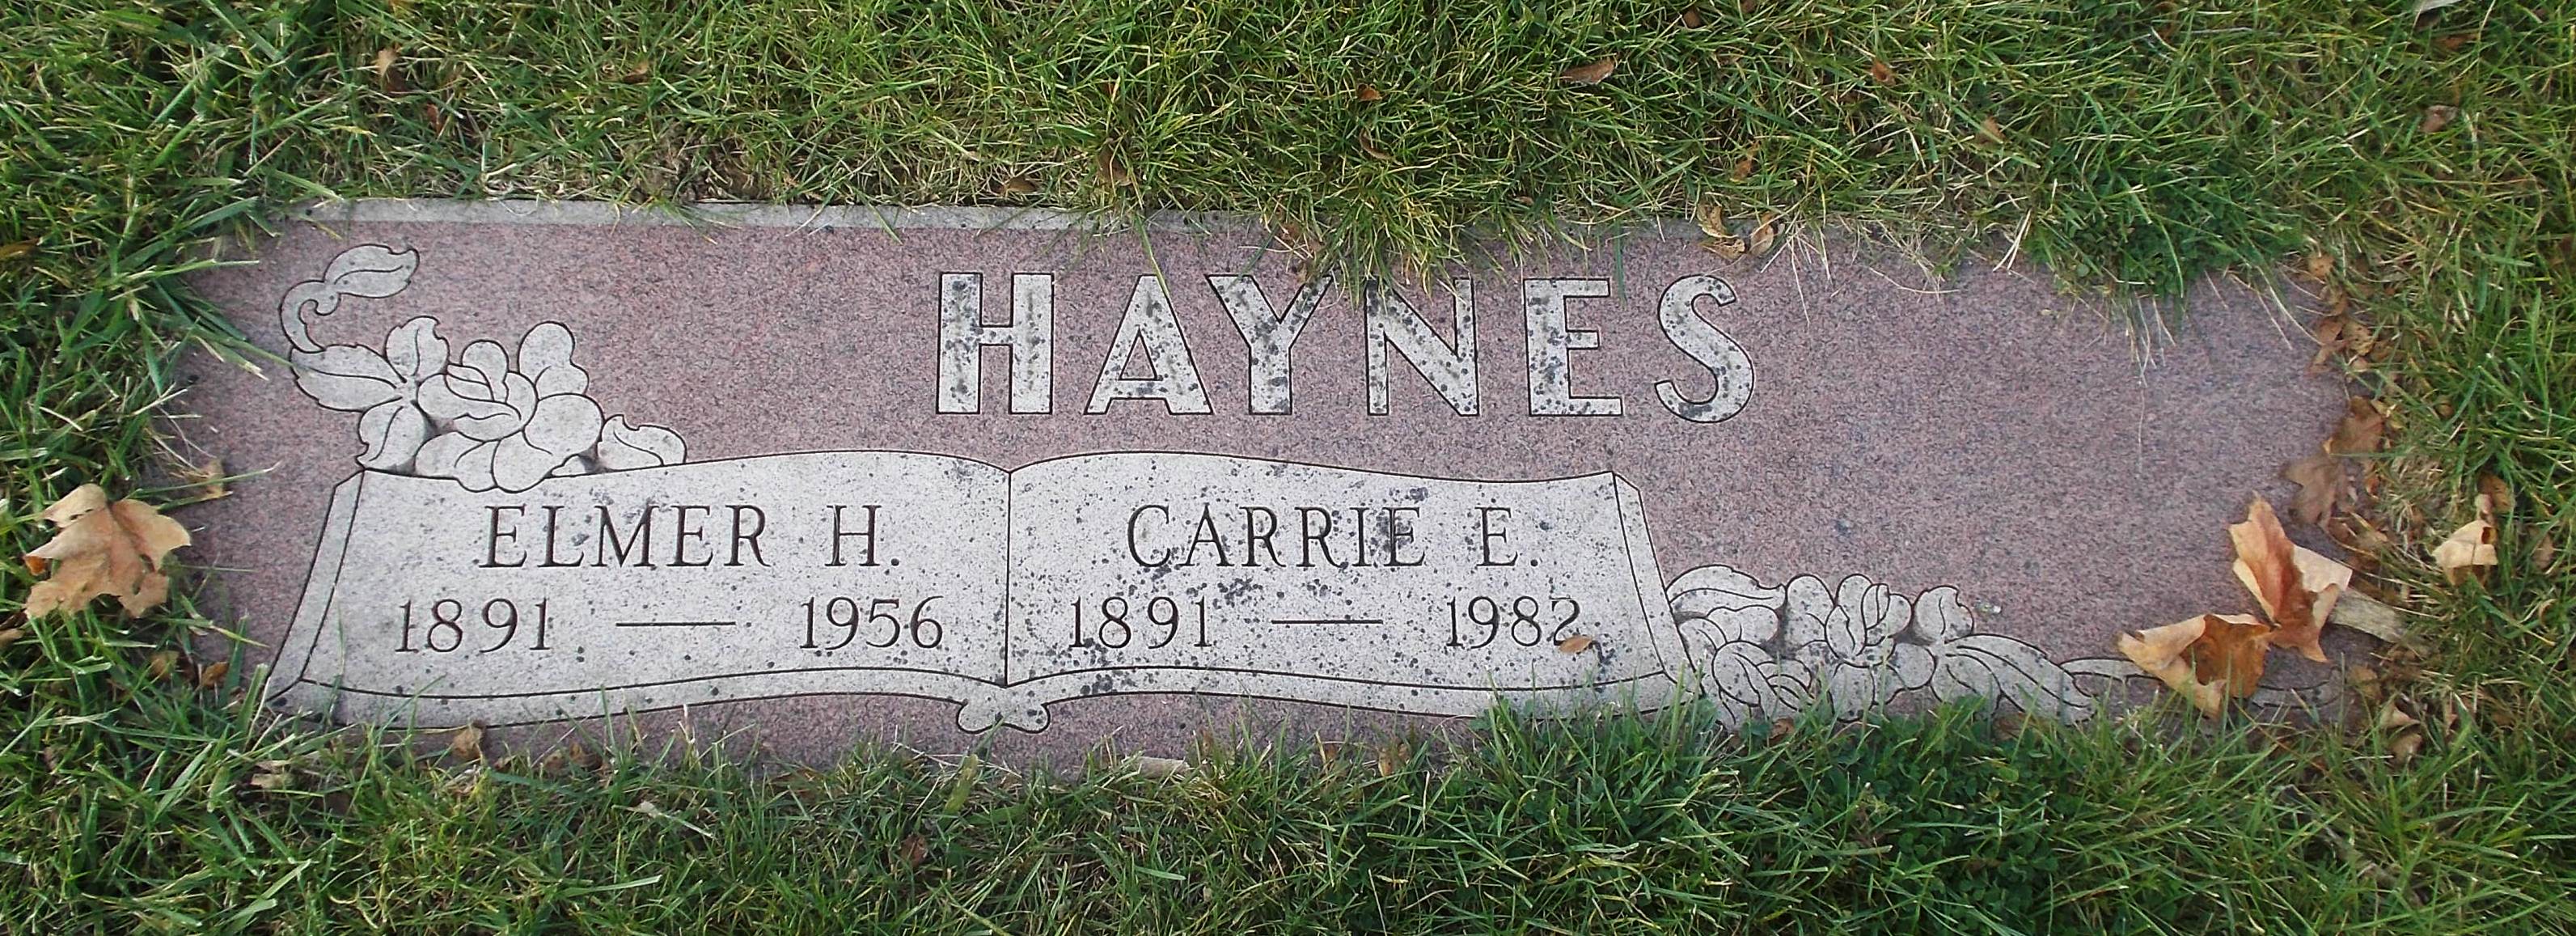 Elmer H Haynes